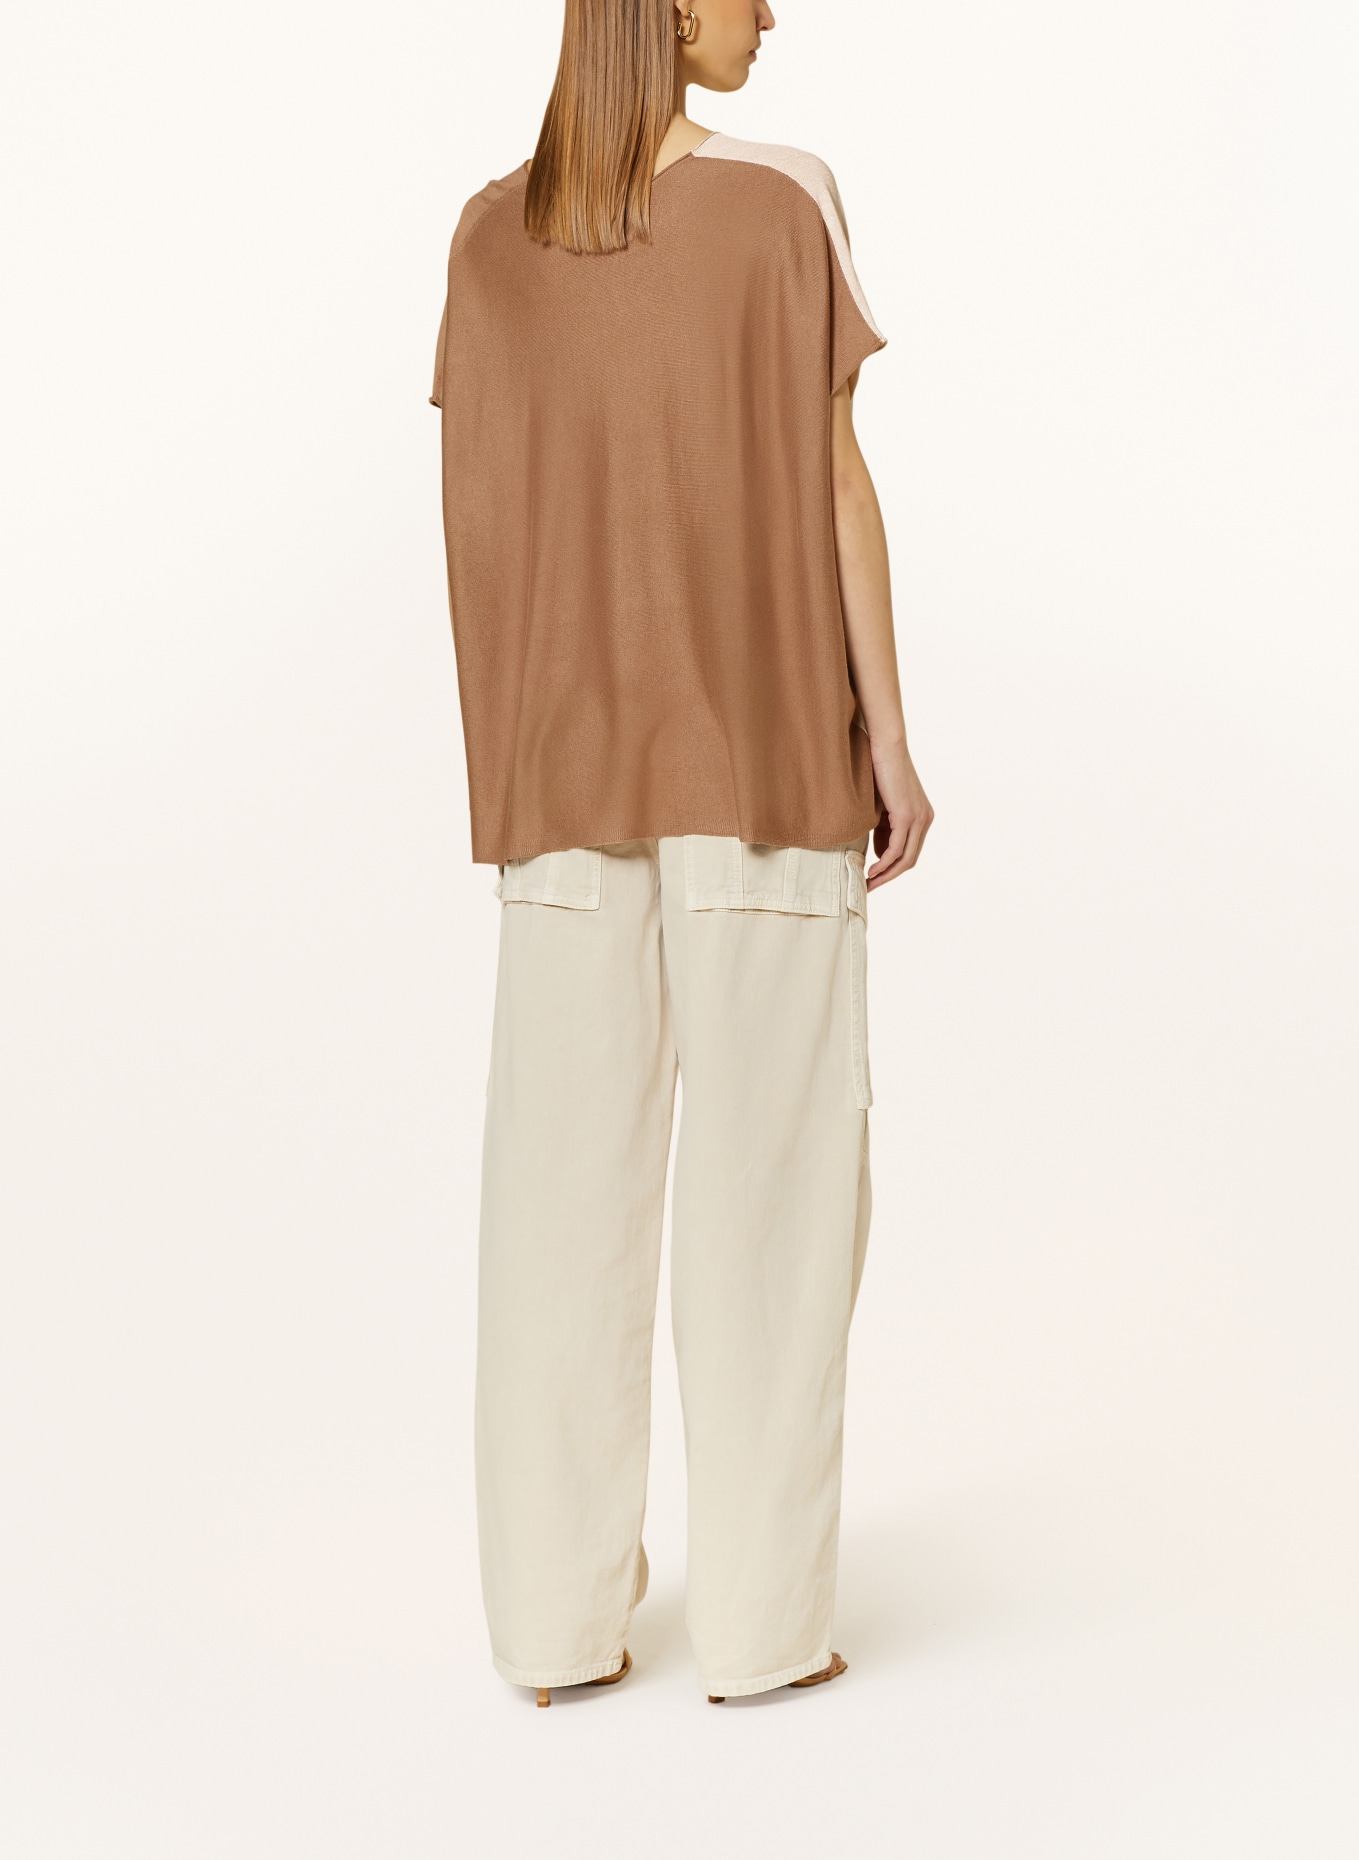 KUJTEN Strickshirt NOSY aus Seide, Farbe: CAMEL/ BRAUN (Bild 3)